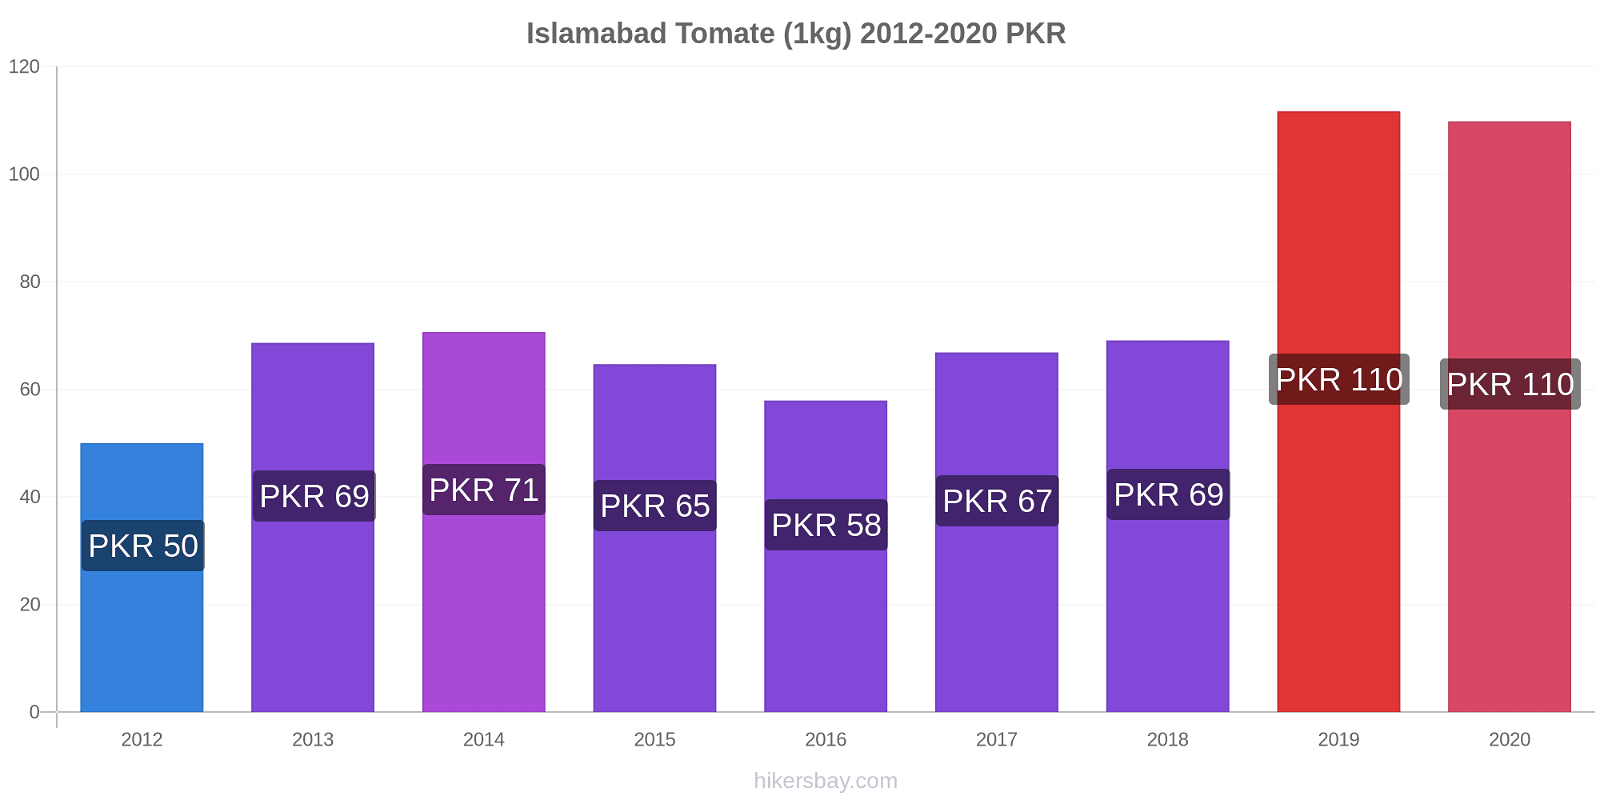 Islamabad cambios de precios Tomate (1kg) hikersbay.com